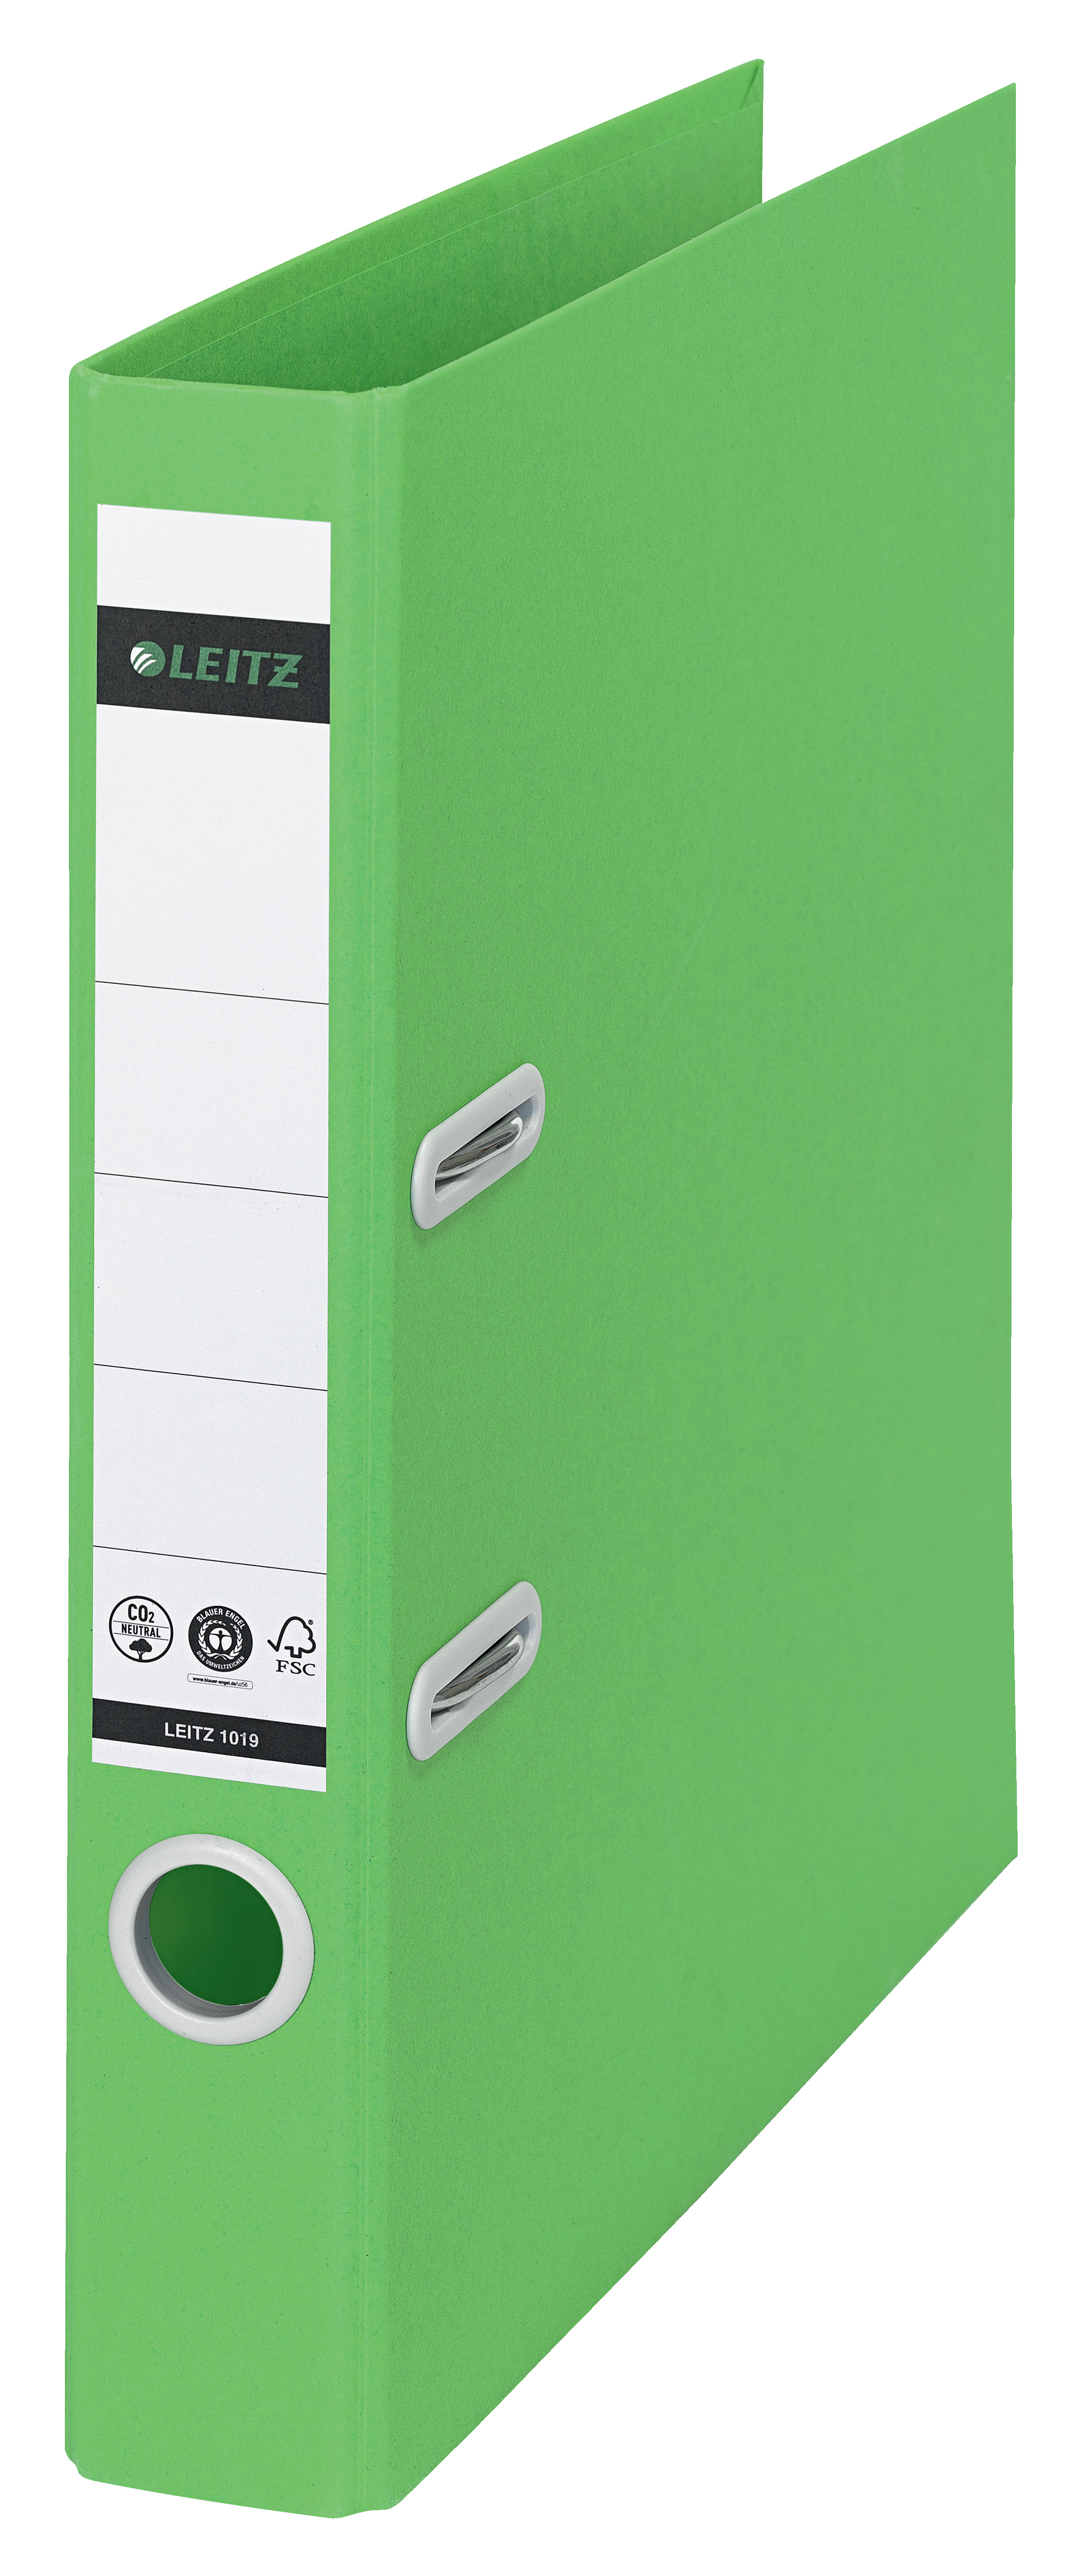 LEITZ Classeur Recycle 5.2cm 1019-00-55 vert A4 vert A4